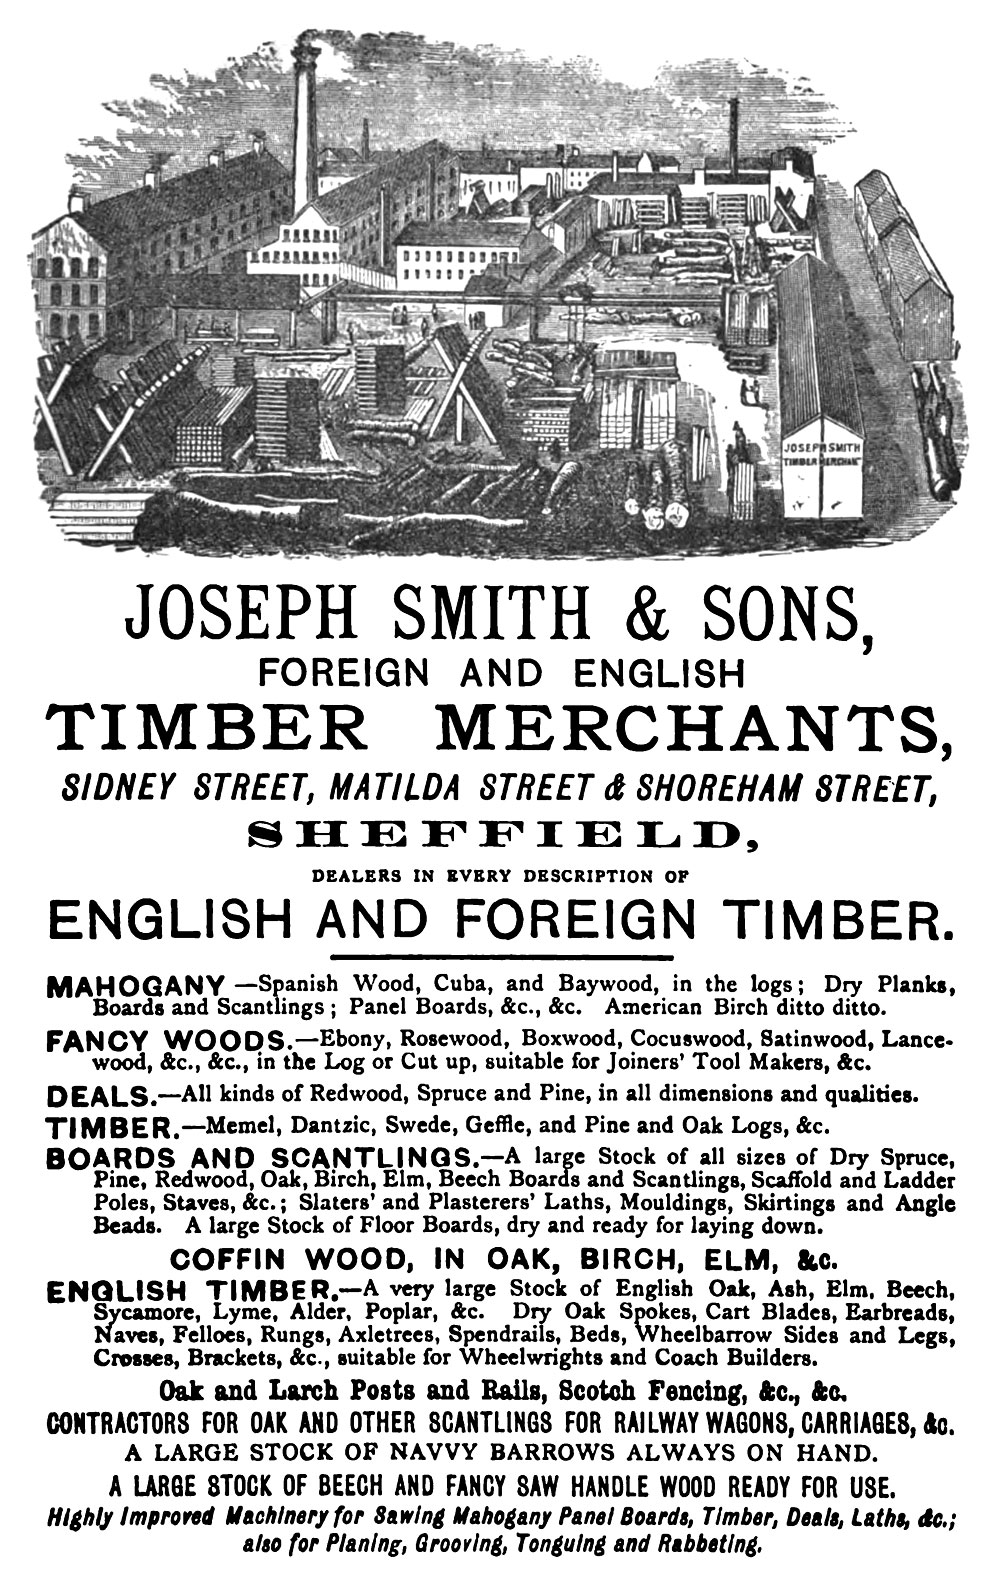 timber_merchant_1879